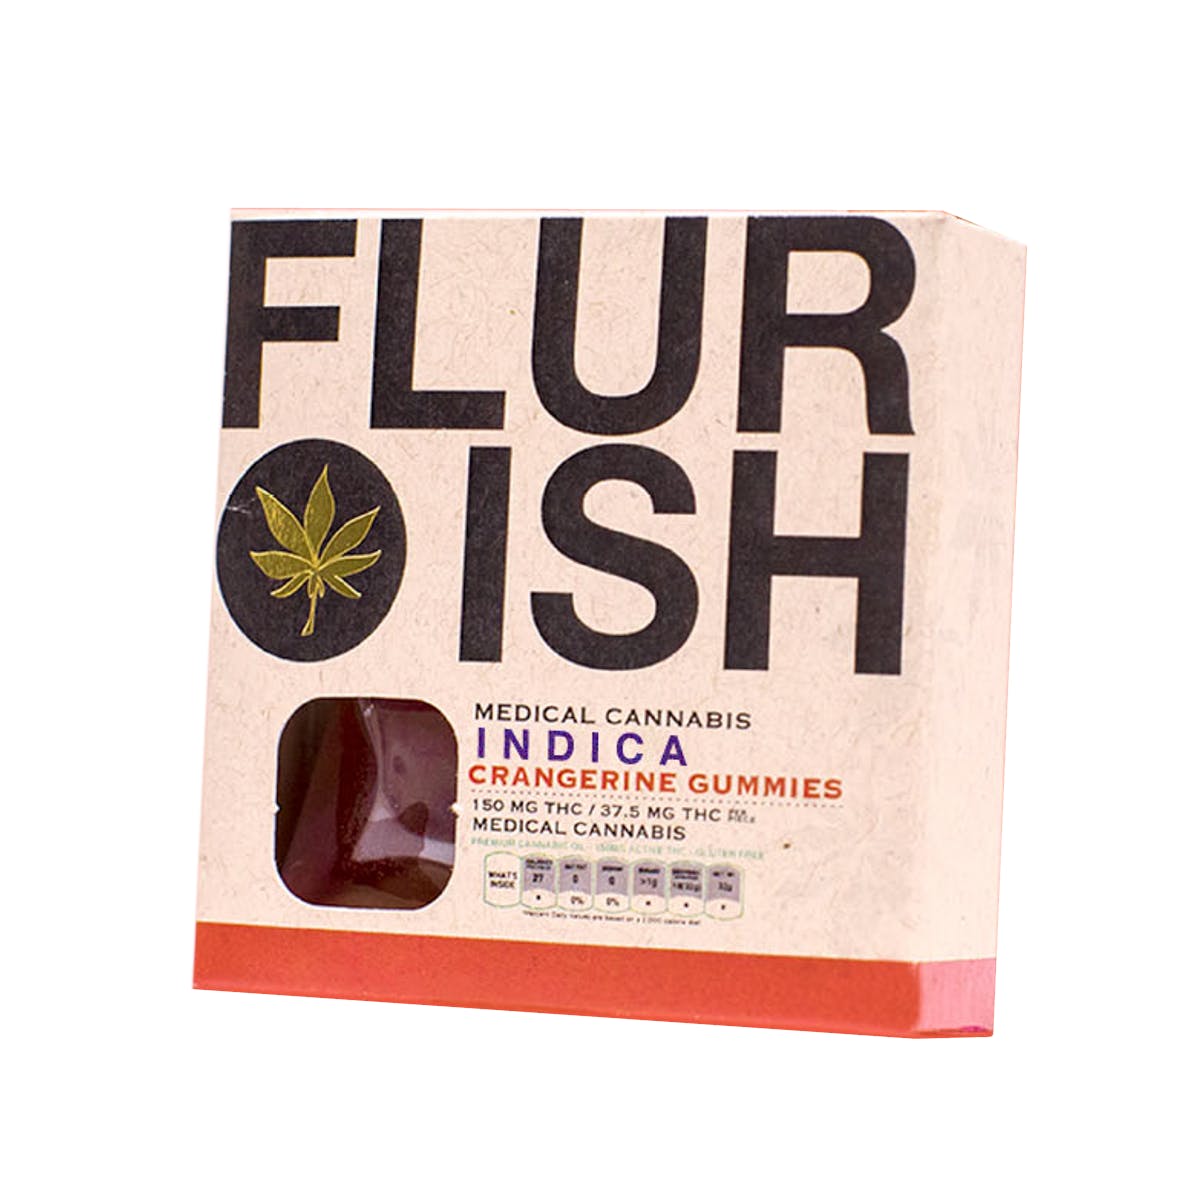 edible-flurish-crangerine-gummies-2c-indica-150mg